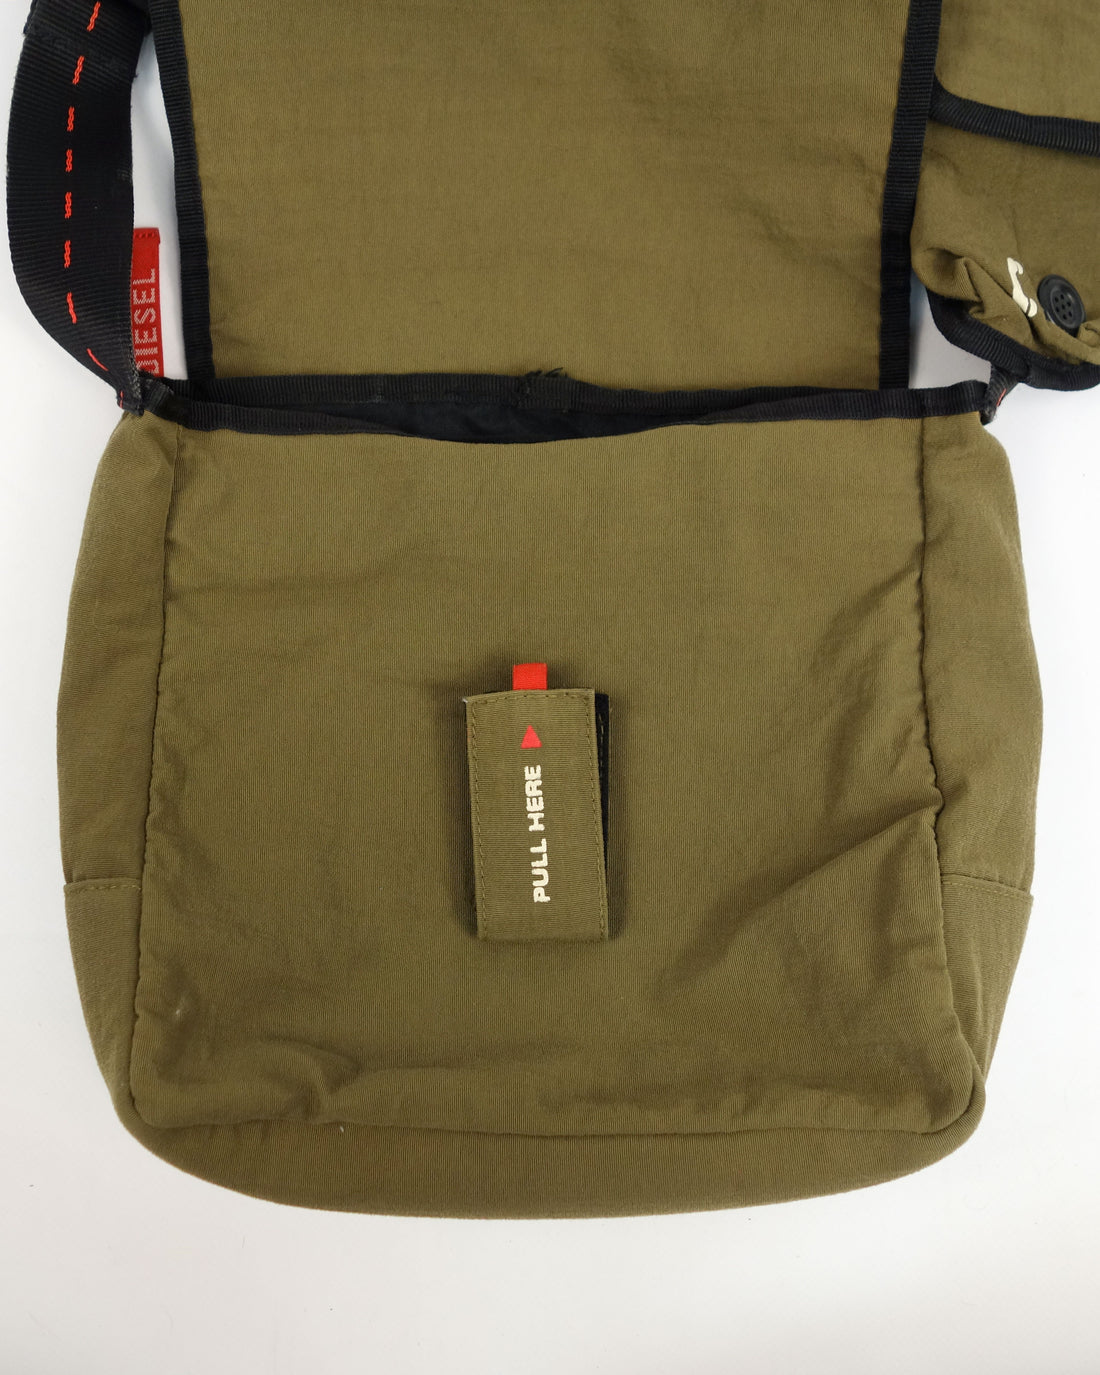 Diesel Parachute Green Side Bag 2000's